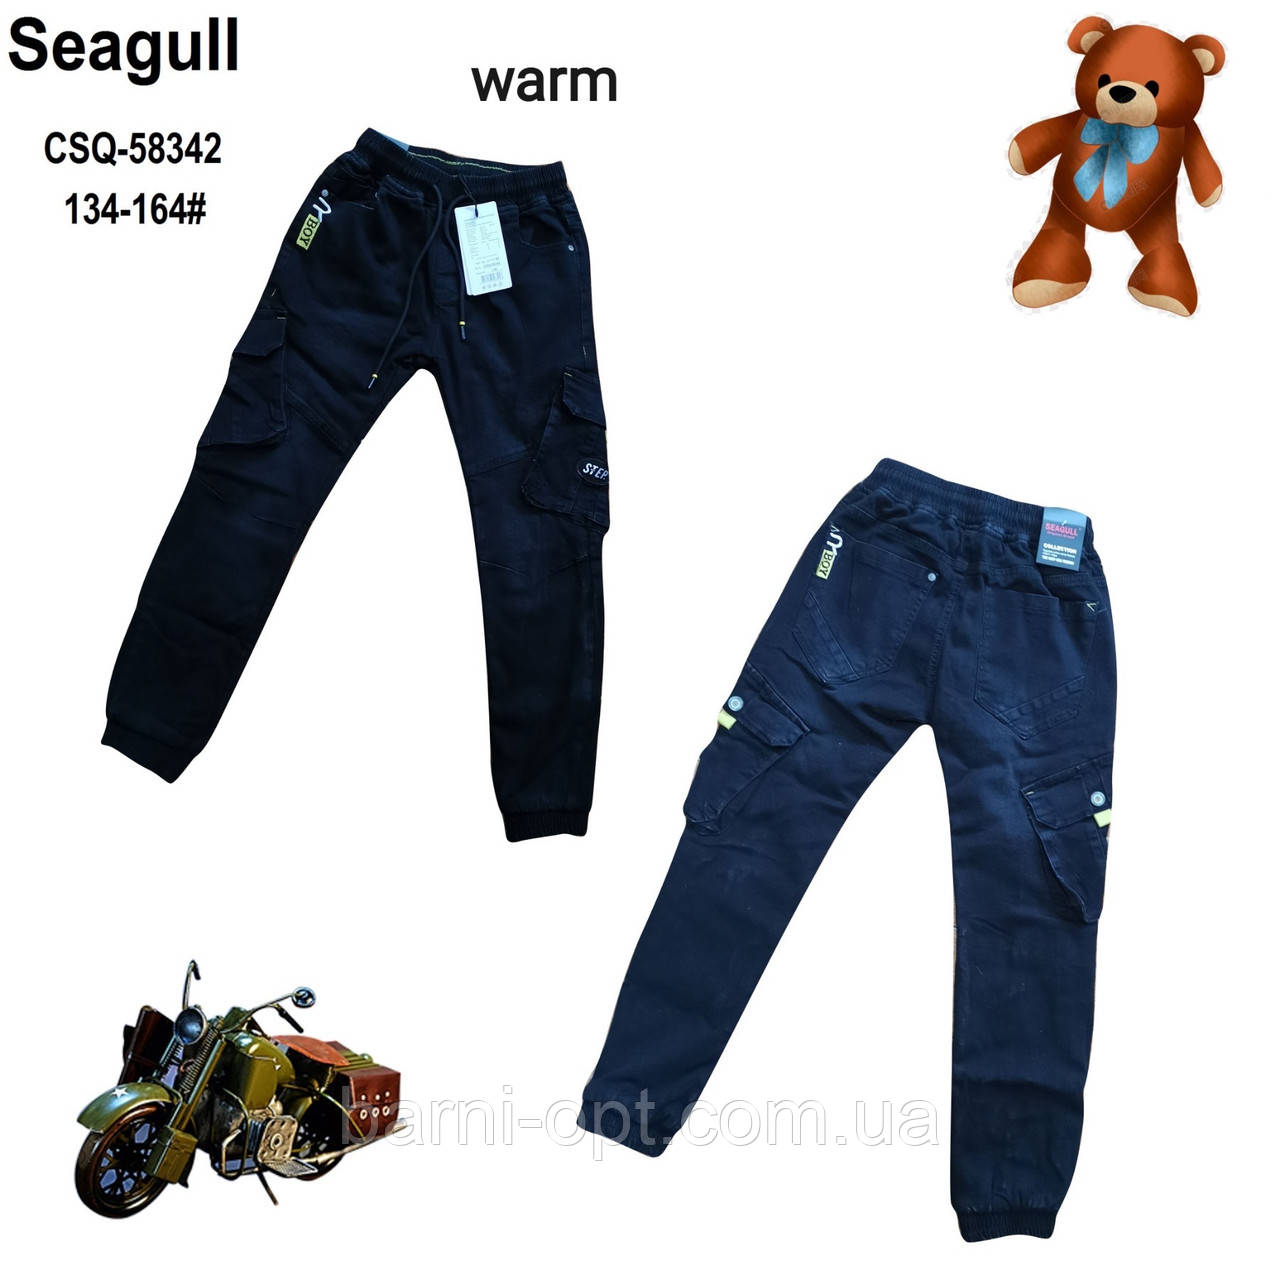 Утеплені штани джокери на флісі для хлопчиків оптом, Seagull, 134-164 рр.